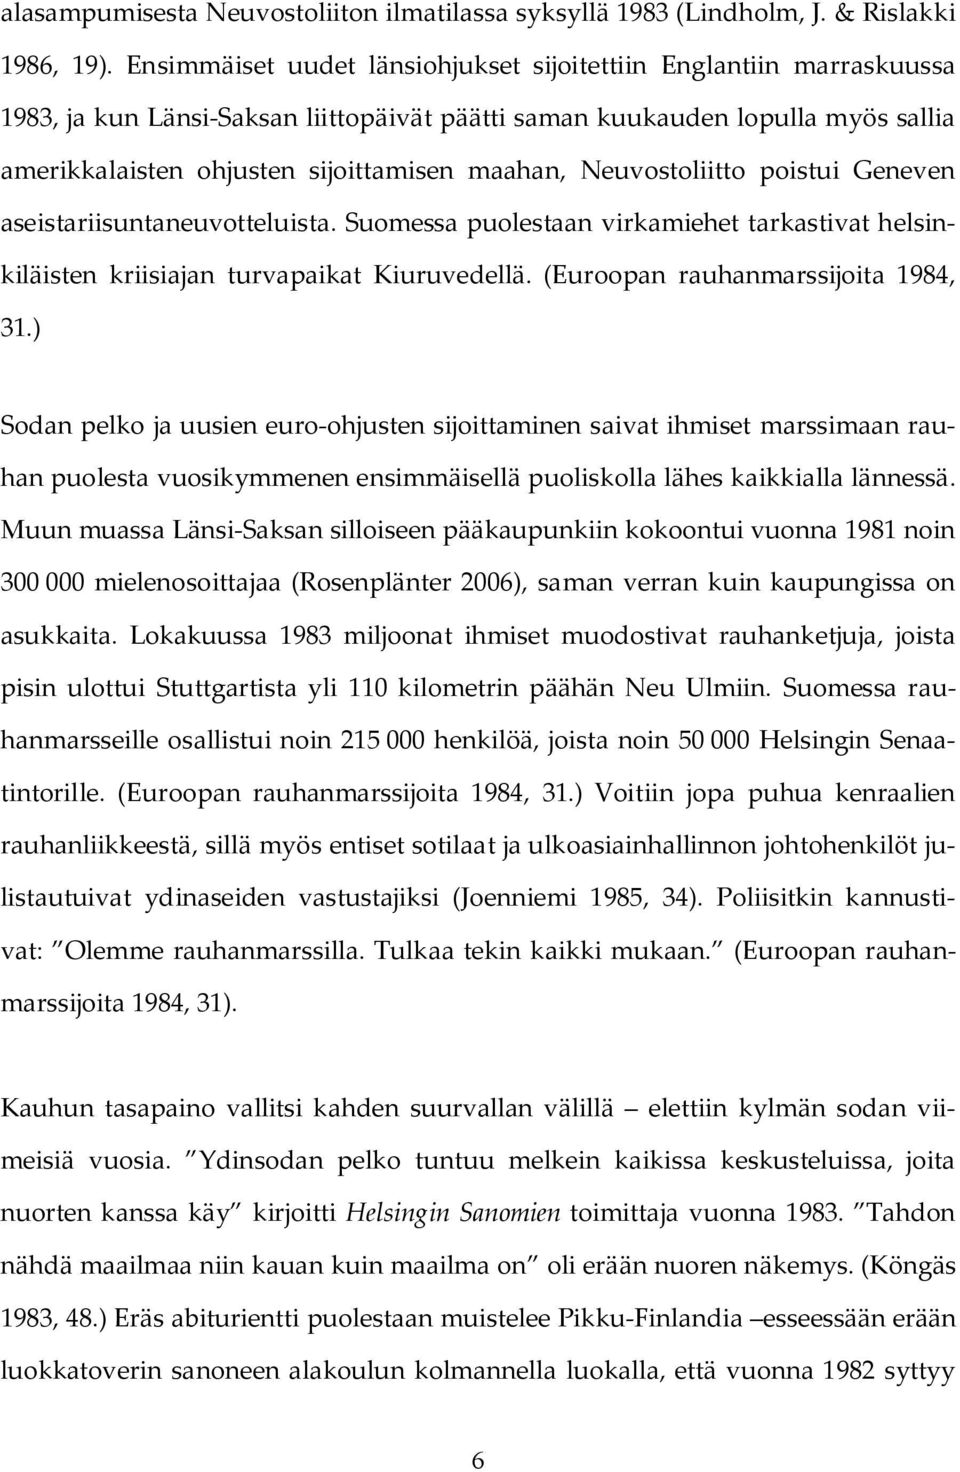 Neuvostoliitto poistui Geneven aseistariisuntaneuvotteluista. Suomessa puolestaan virkamiehet tarkastivat helsinkiläisten kriisiajan turvapaikat Kiuruvedellä. (Euroopan rauhanmarssijoita 1984, 31.